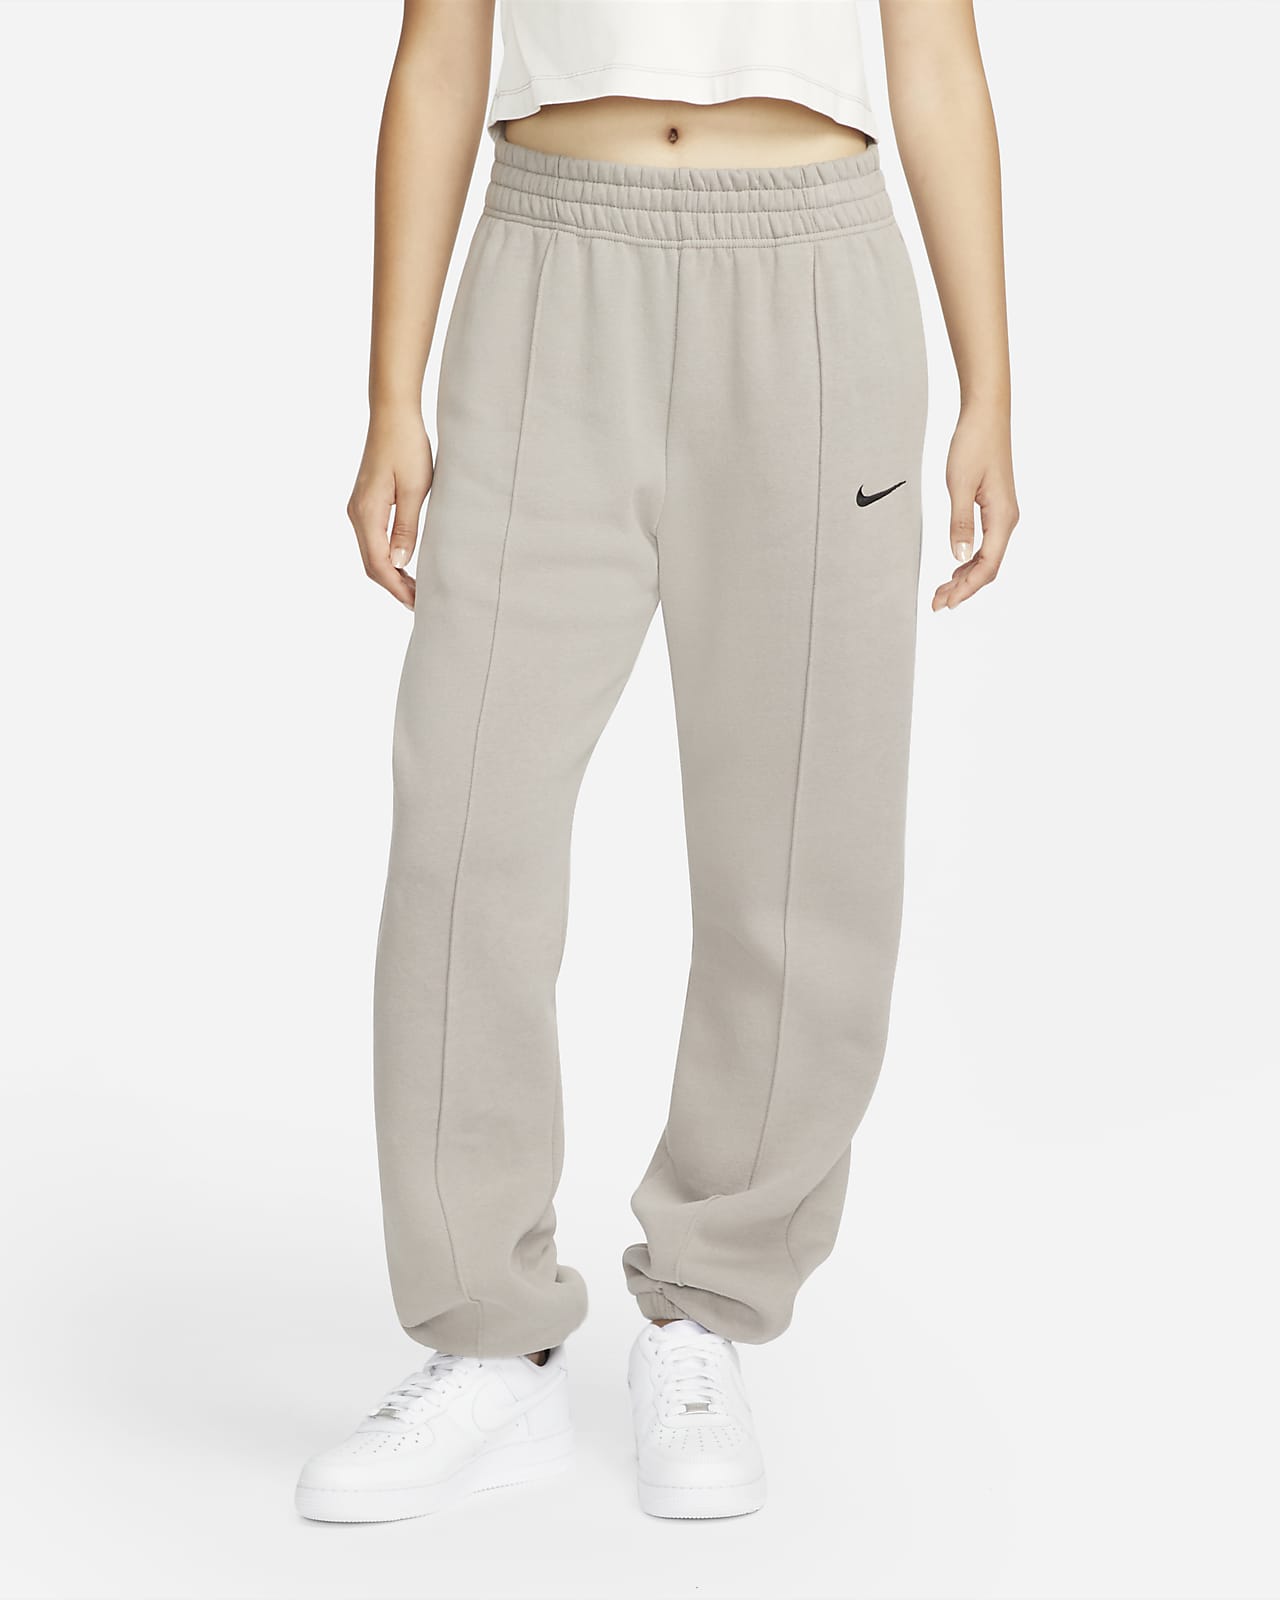 fragmento Indirecto Presta atención a Nike Sportswear Collection Essentials Pantalón - Mujer. Nike ES